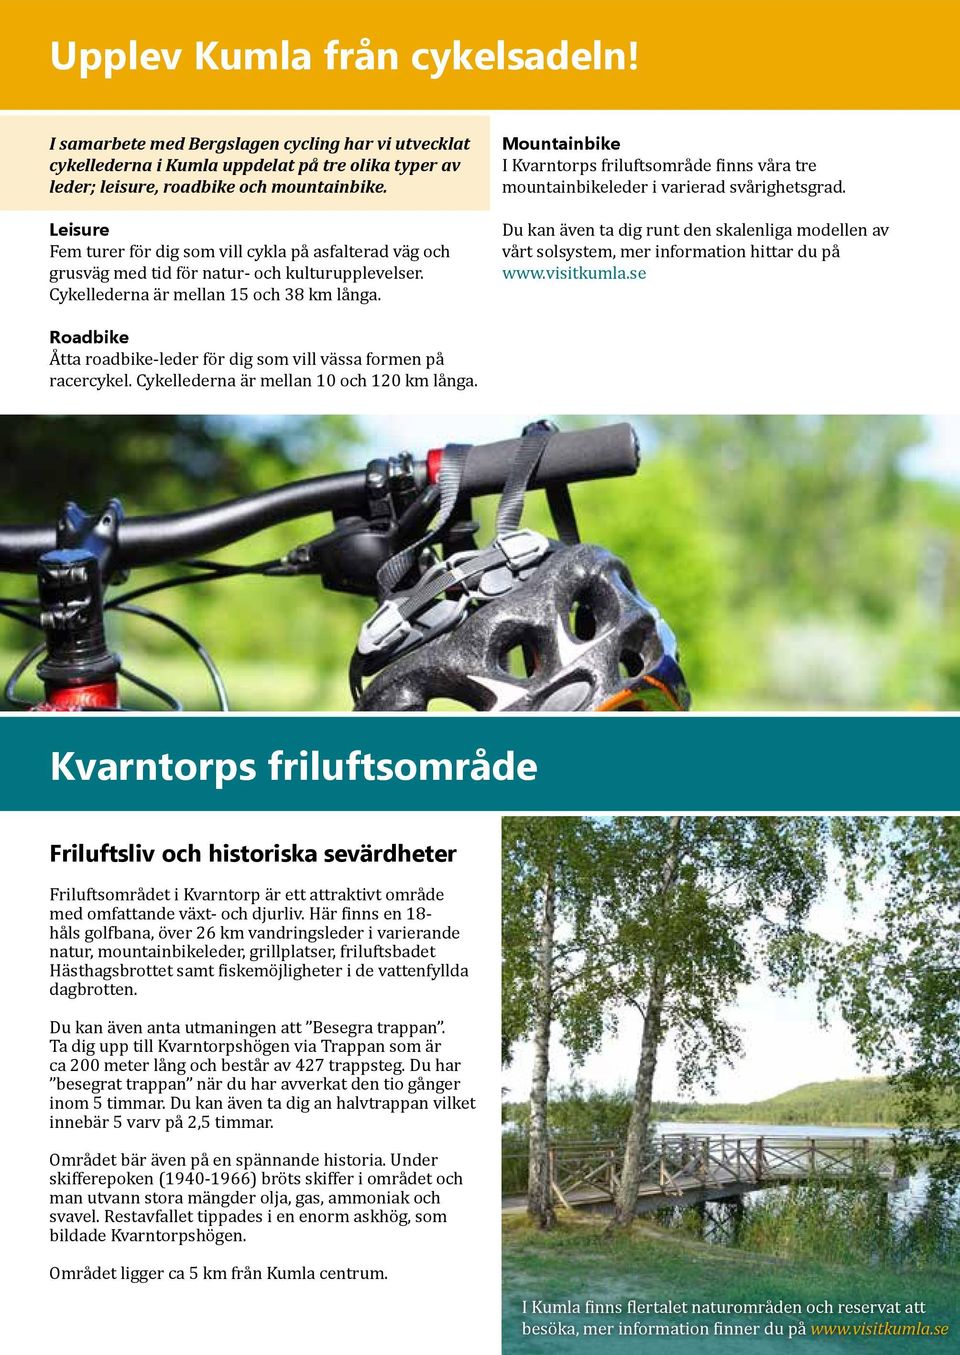 Mountainbike I Kvarntorps friluftsområde finns våra tre mountainbikeleder i varierad svårighetsgrad.